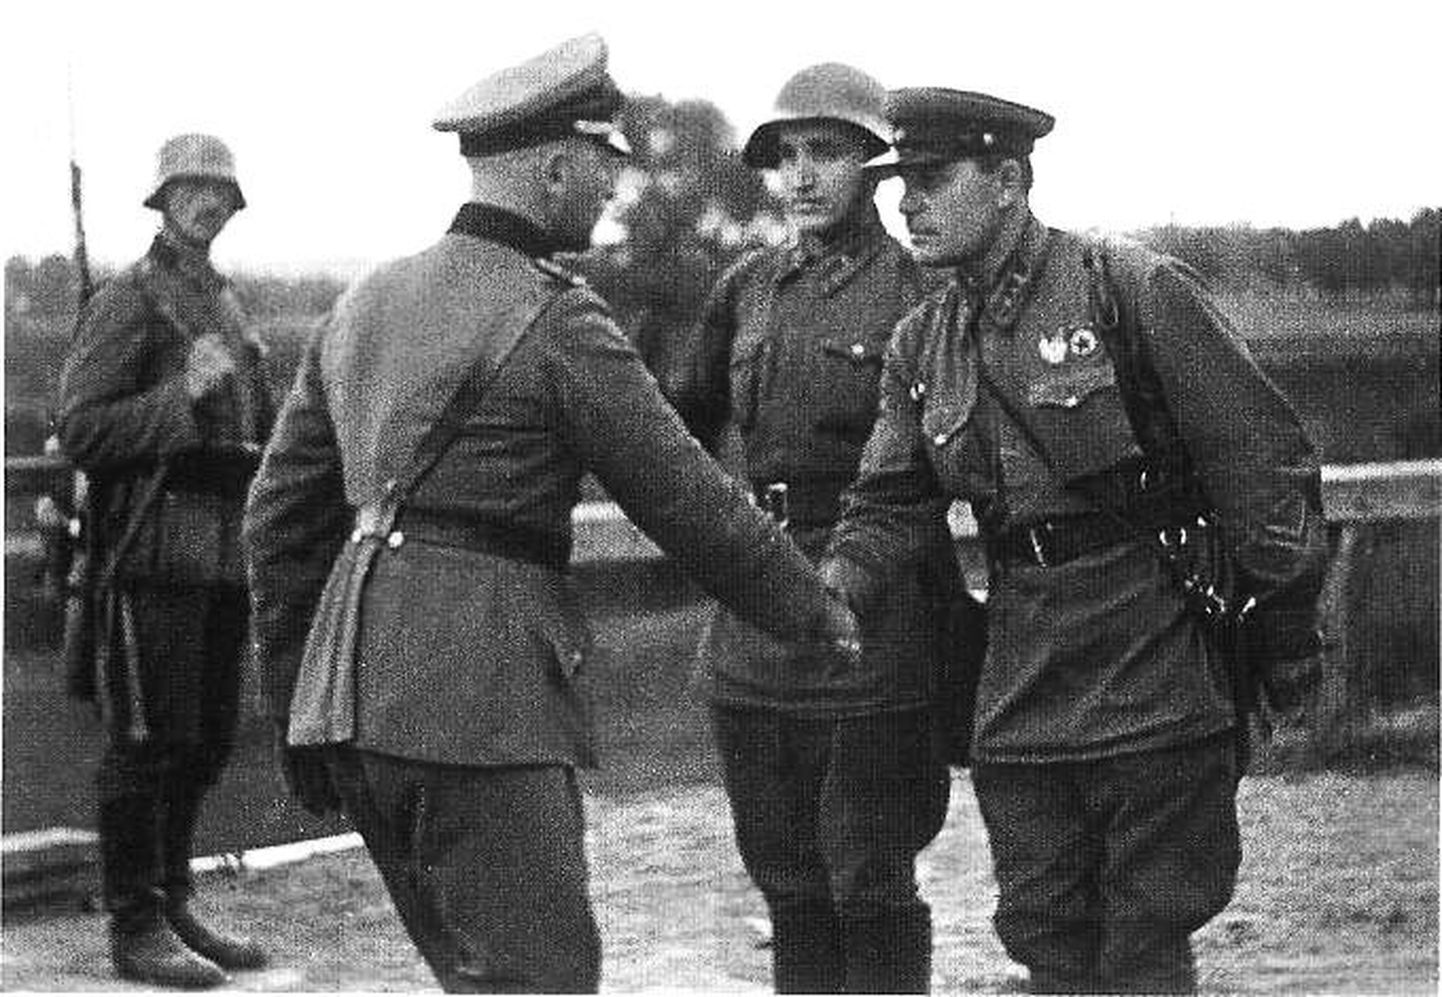 Liitlaste käepigistus: Wehrmachti ja Punaarmee esindajad pärast Poola jagamist ja vallutamist septembris 1939 kätlemas.